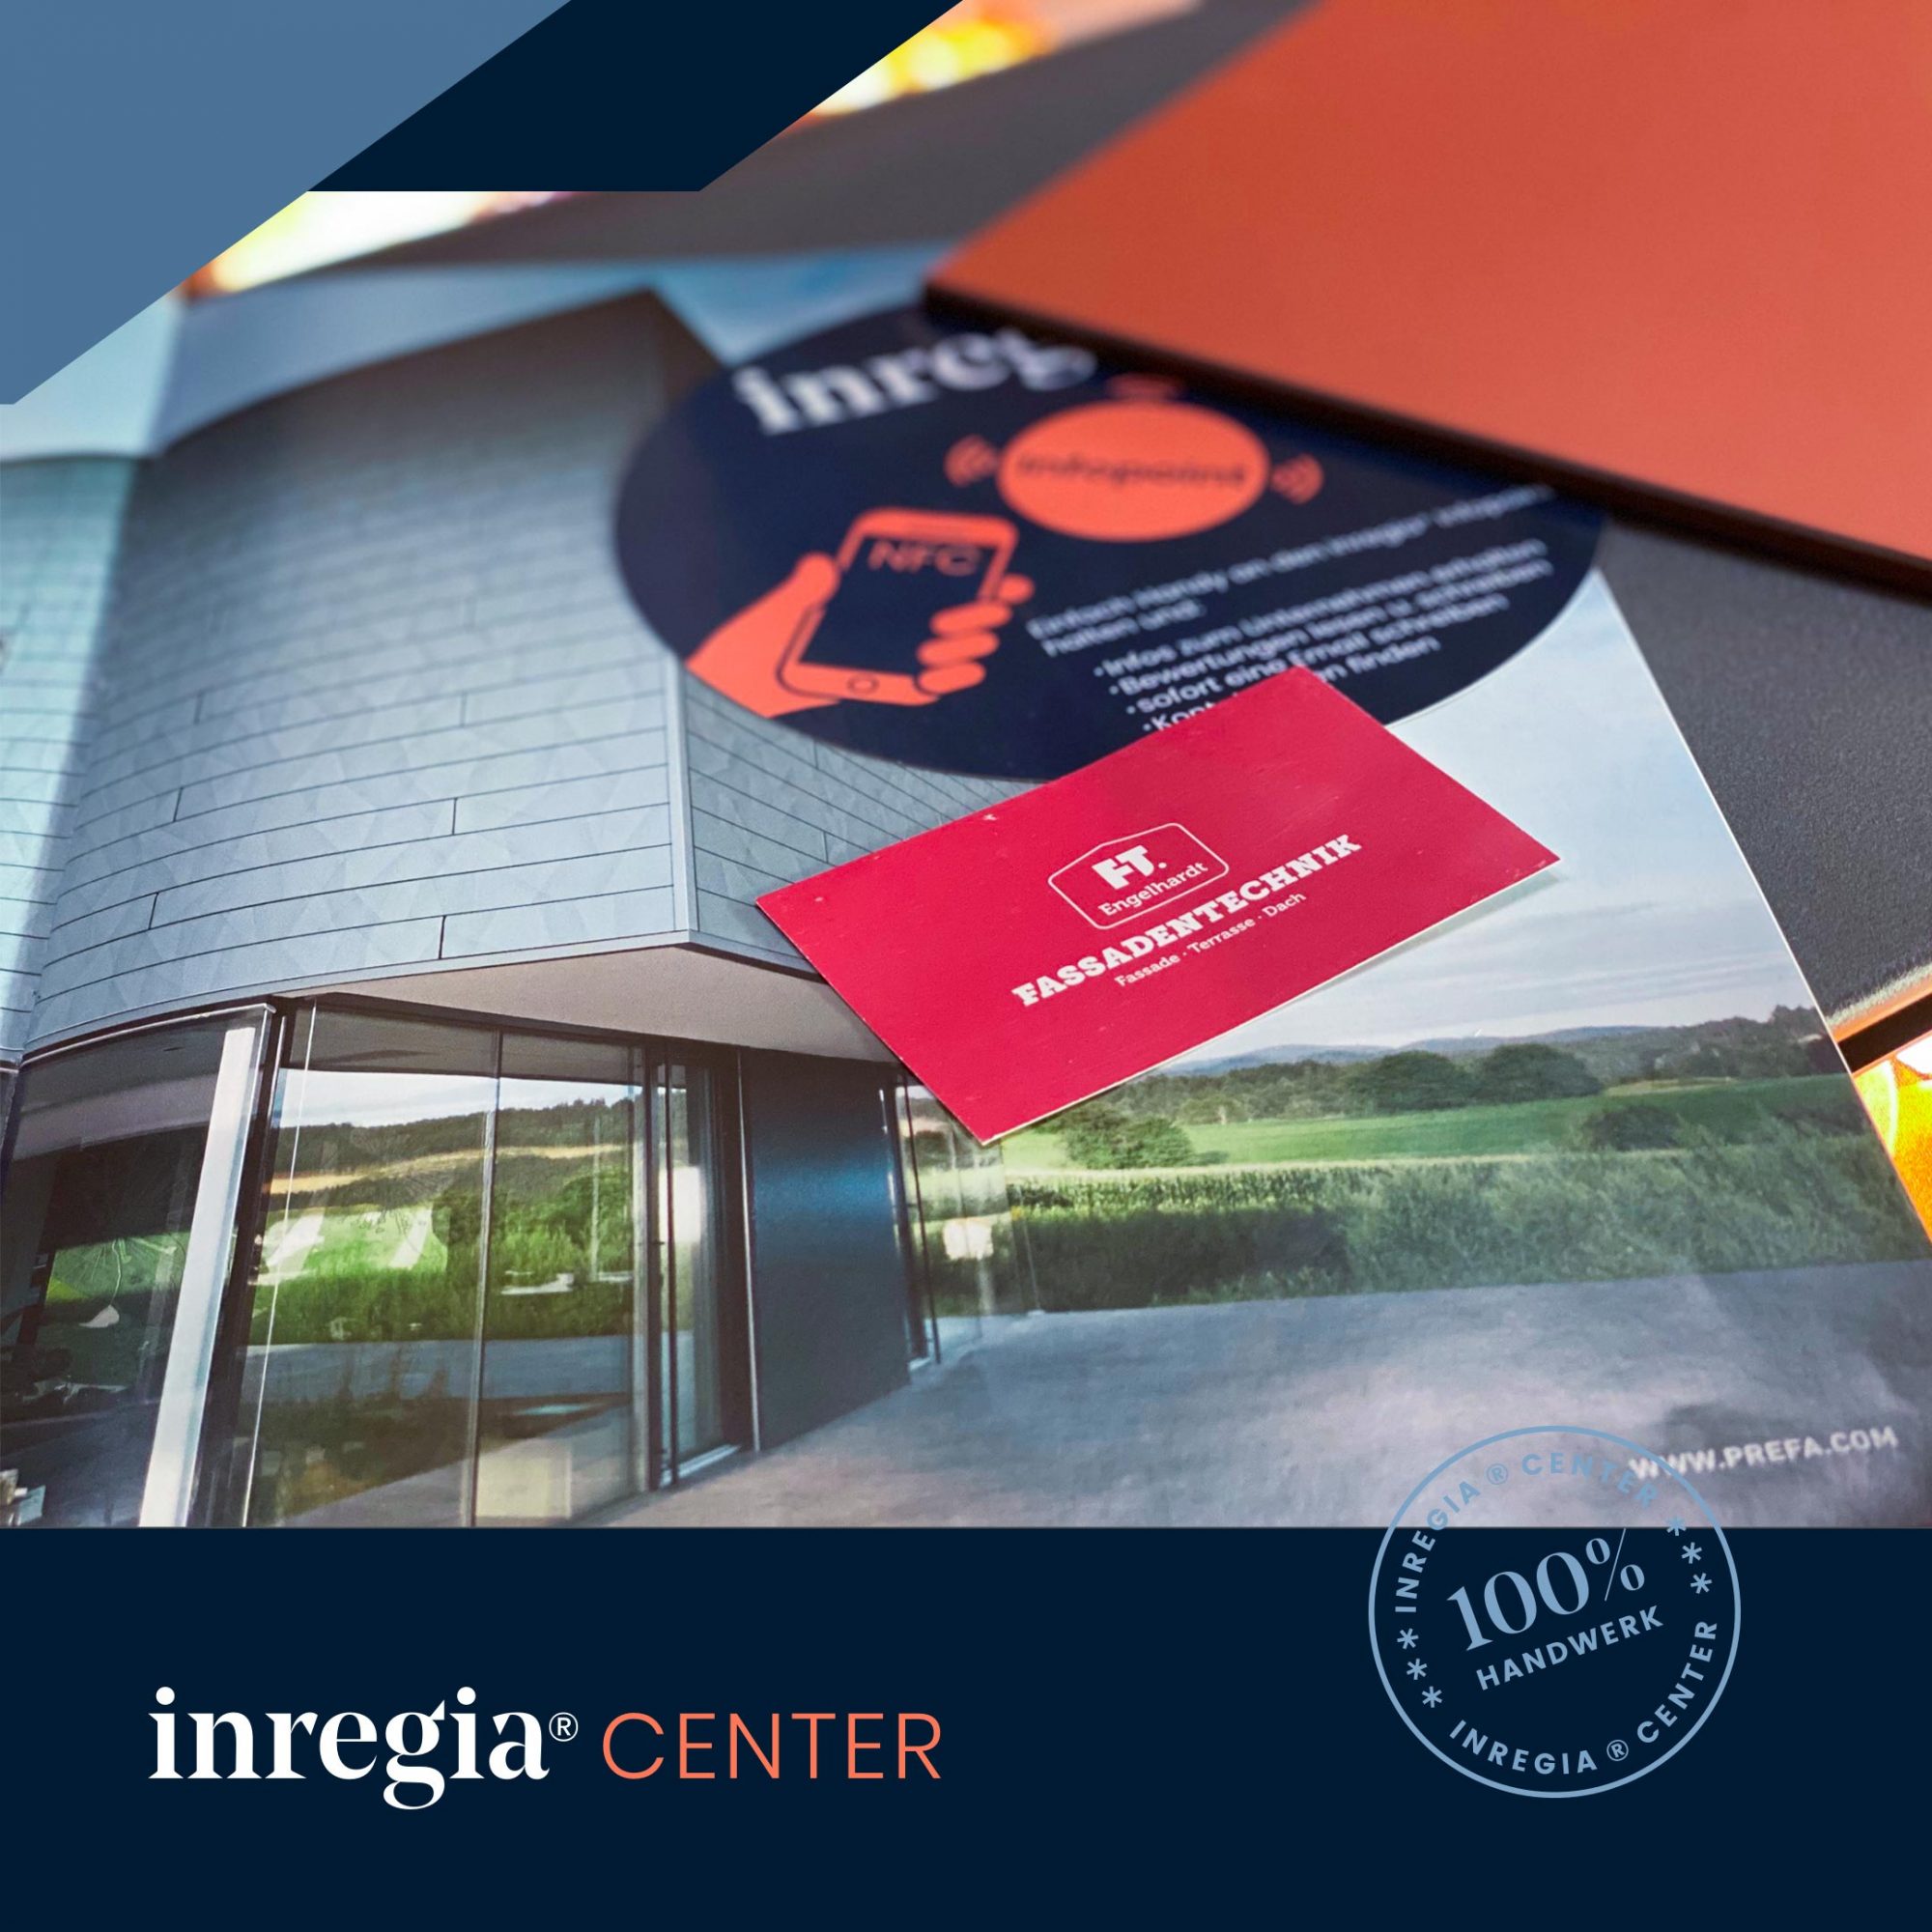 inregia®Center News – Neue Fassade für das Center geplant